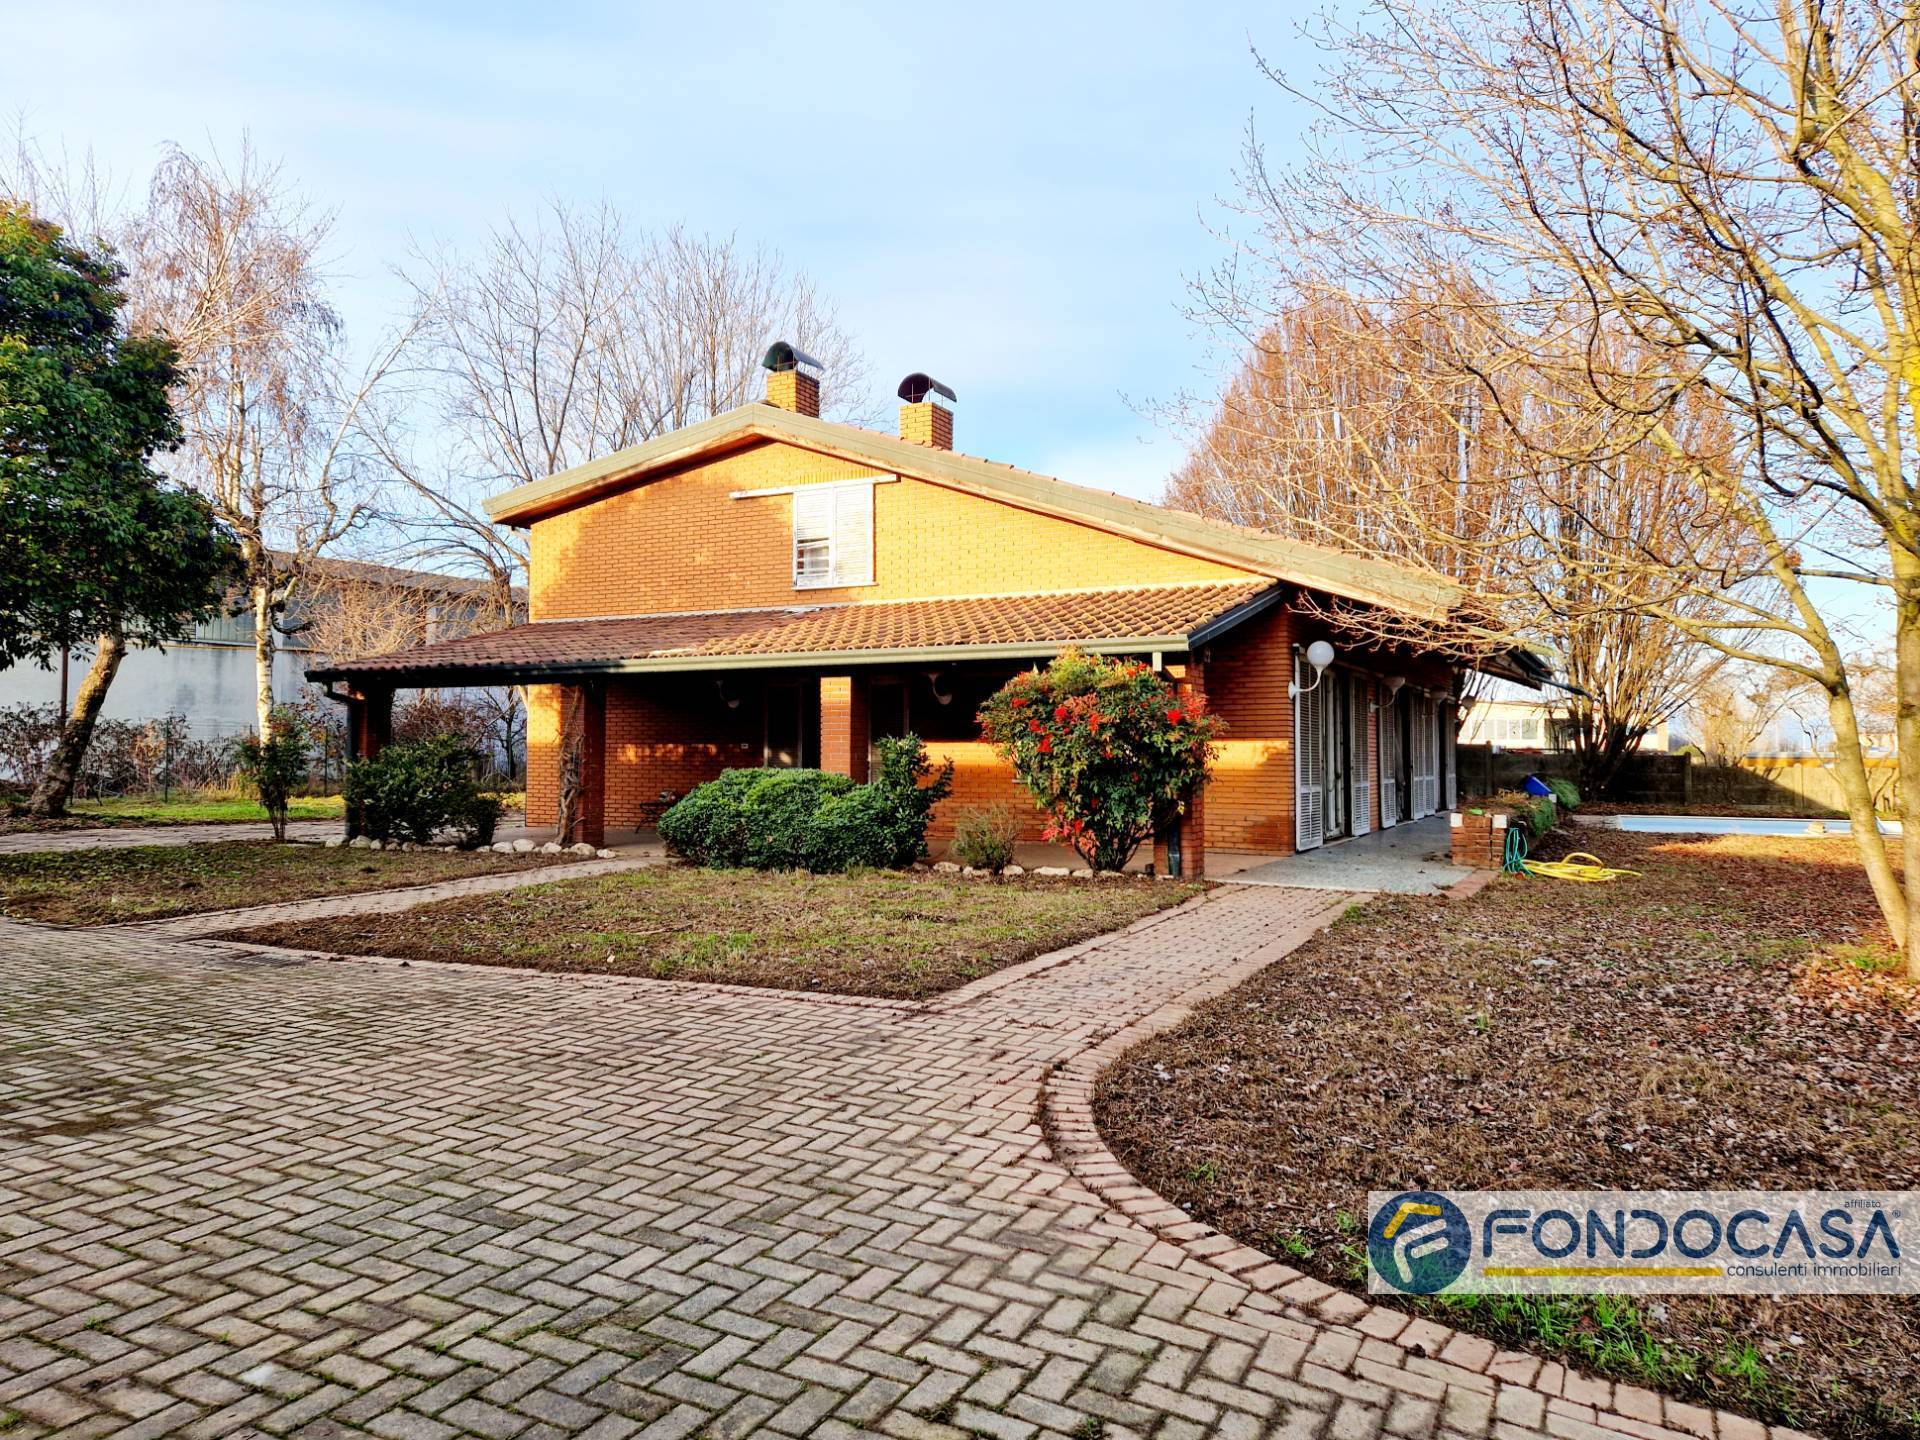 Villa in vendita a Verolanuova, 9 locali, prezzo € 220.000 | PortaleAgenzieImmobiliari.it